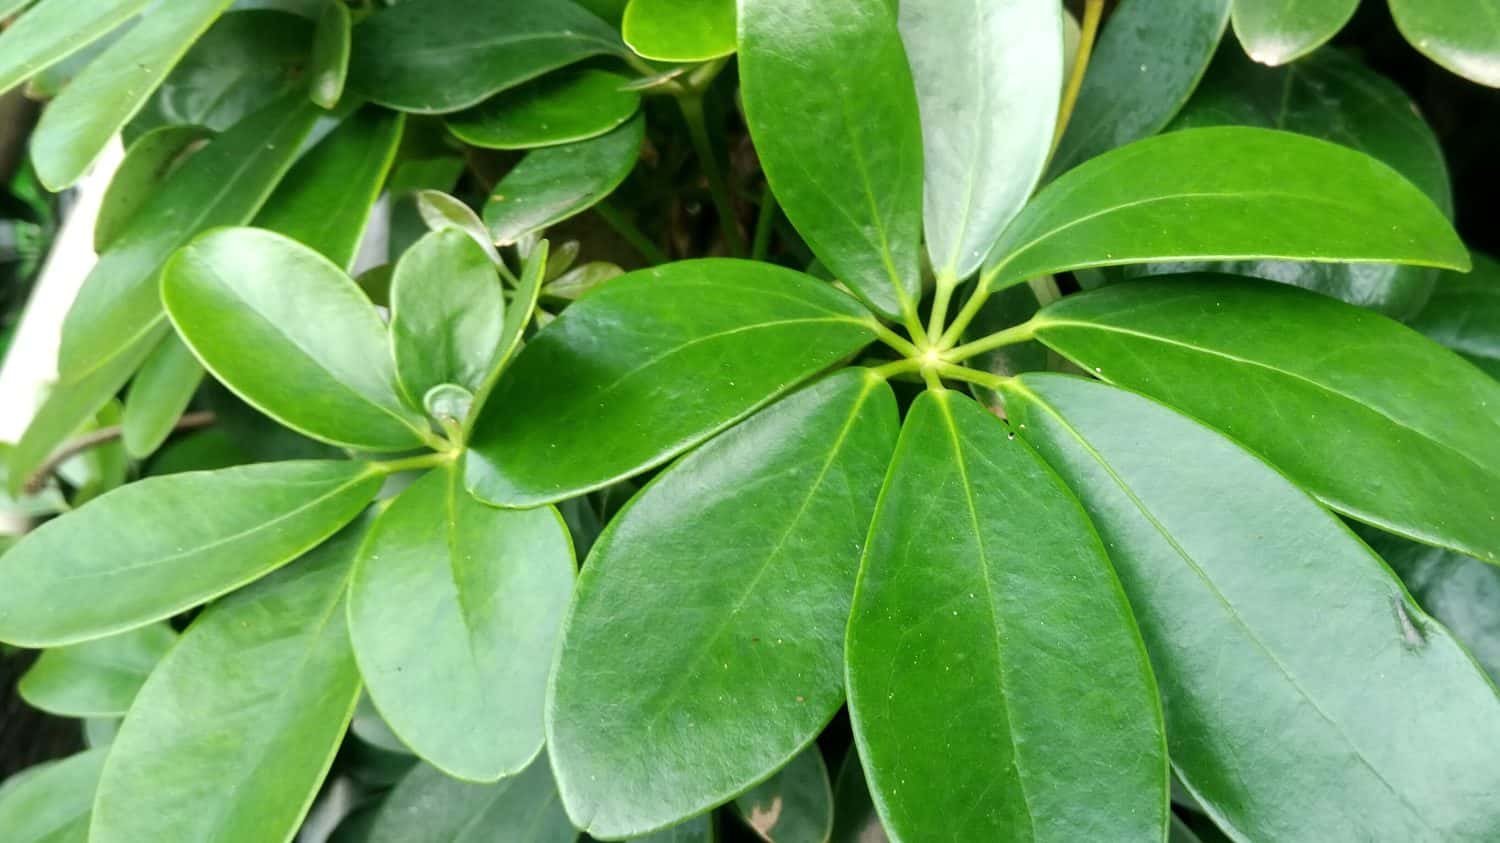 Pianta dell'ombrello (Schefflera heptaphylla) o pianta dell'edera.  In Indonesia è conosciuta come pianta Walisongo.